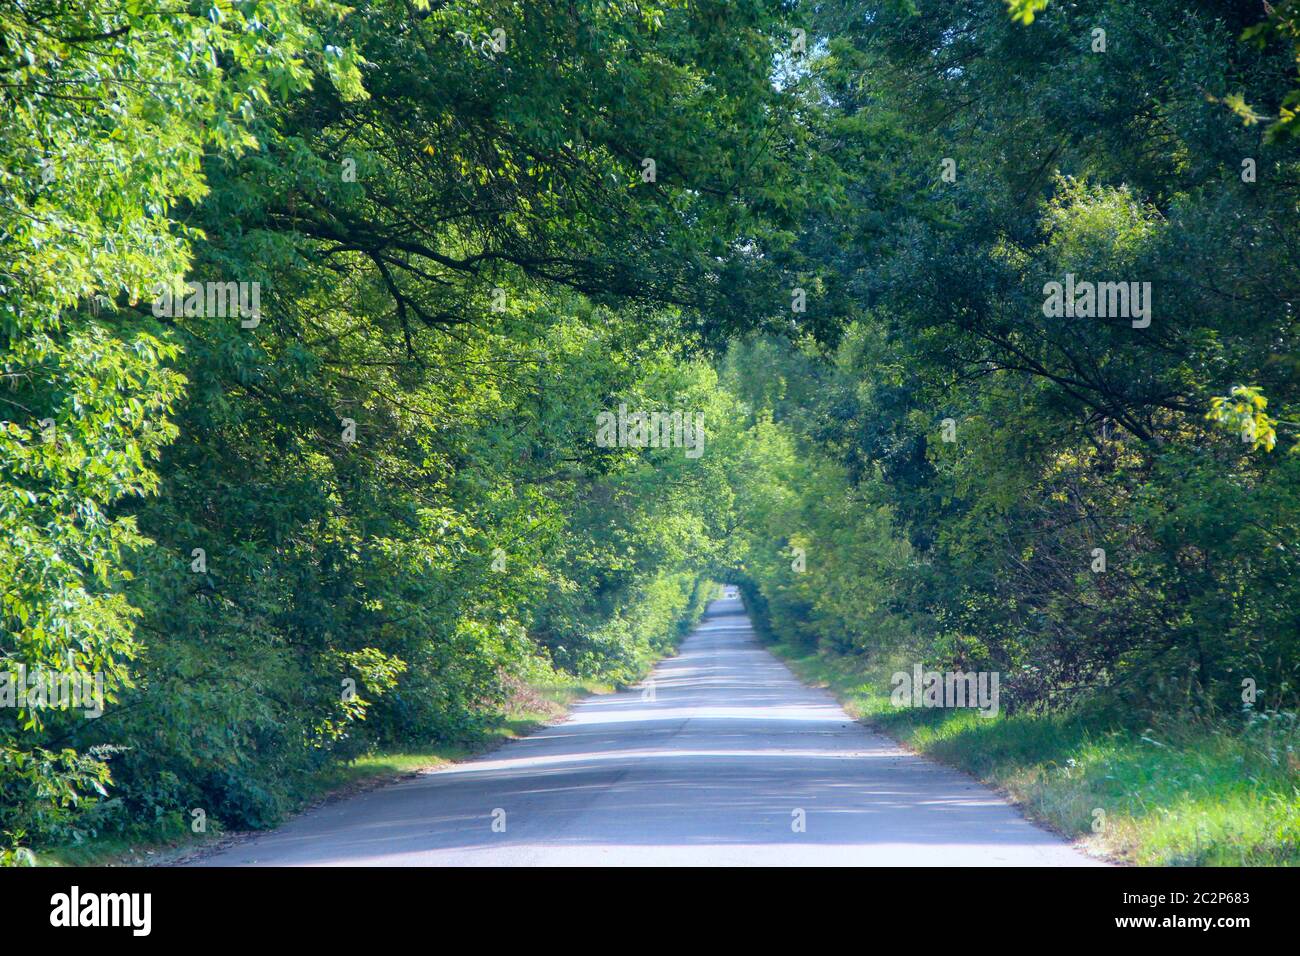 Asphaltierte Straße und grüne Straßenränder mit Büschen. Natürlicher Bogen von grünen Bäumen neben Straße Stockfoto